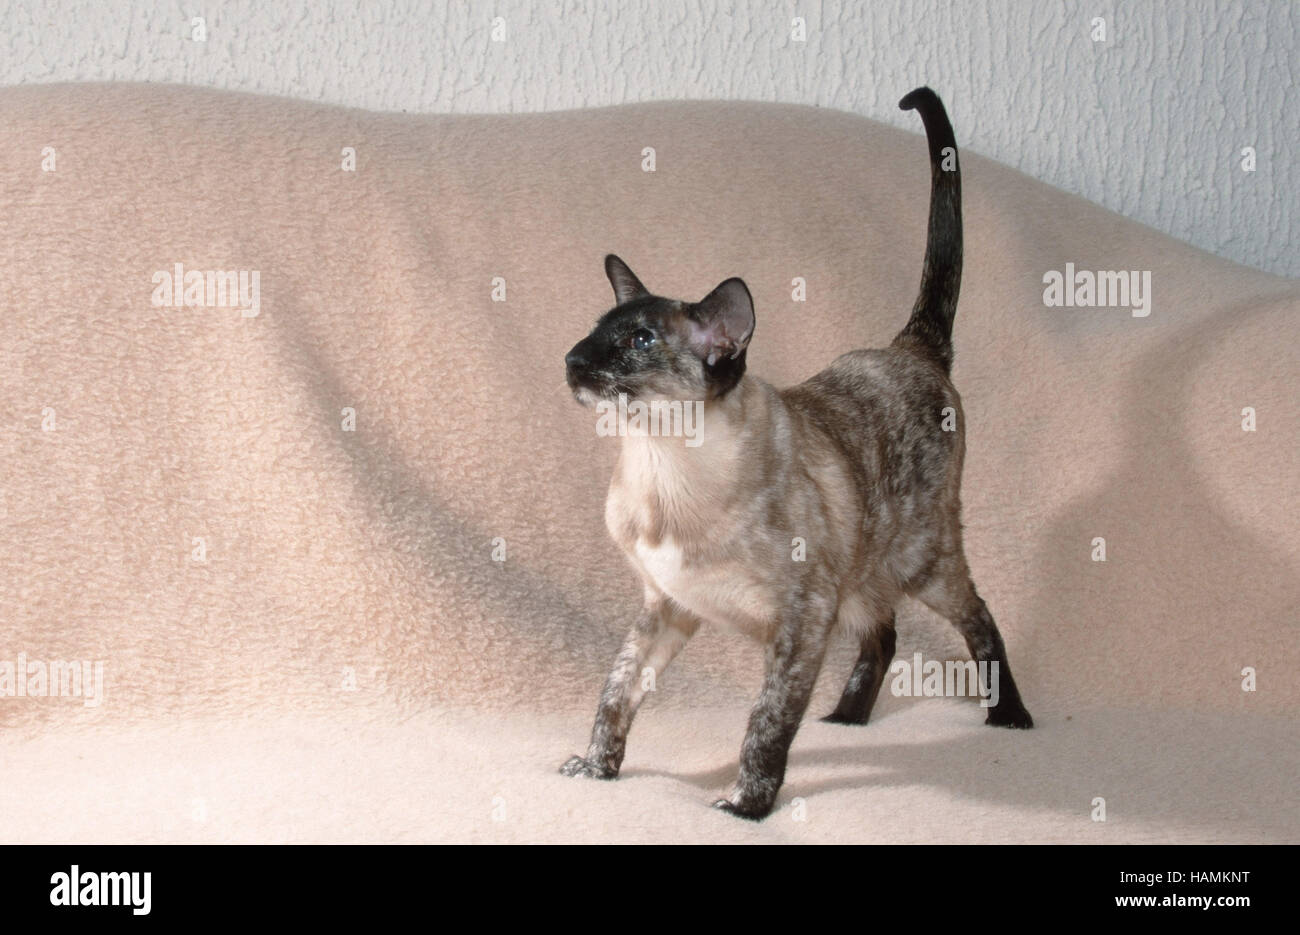 Siamese Cat / Siamese / Siamkatze Stock Photo